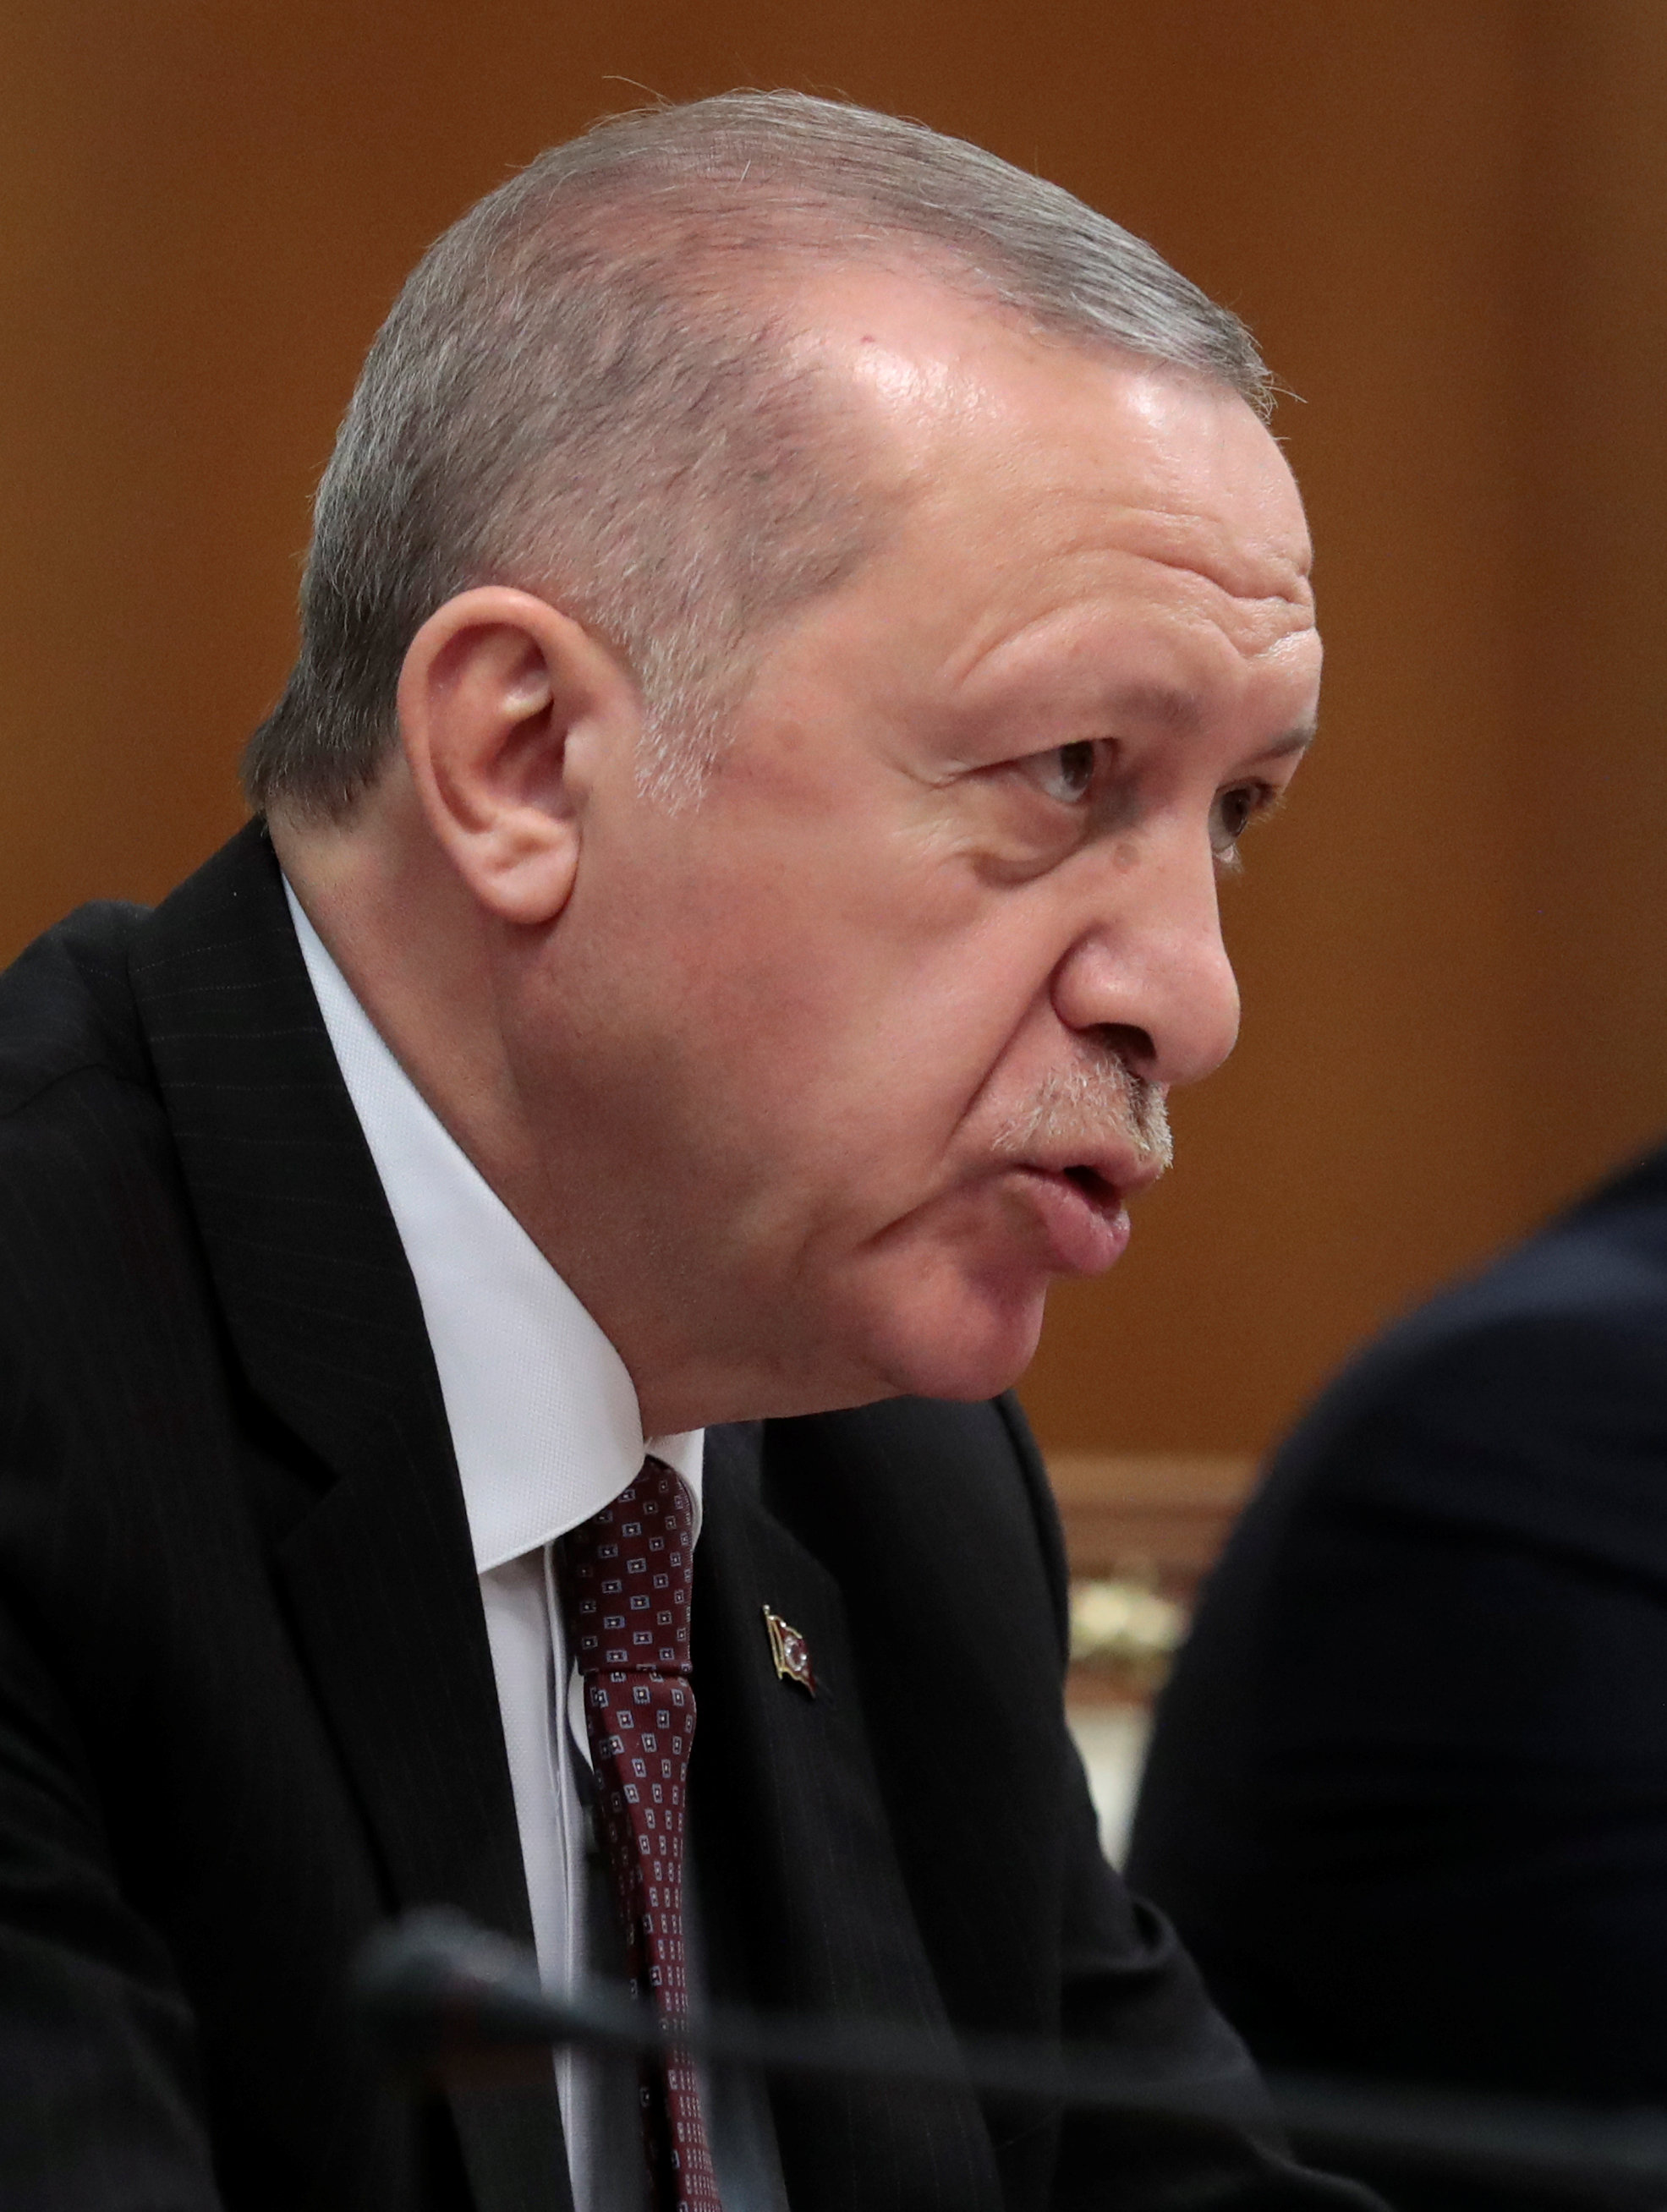 اردوغان از رویکرد اتحادیه اروپا در مورد آوارگان سوری انتقاد کرد